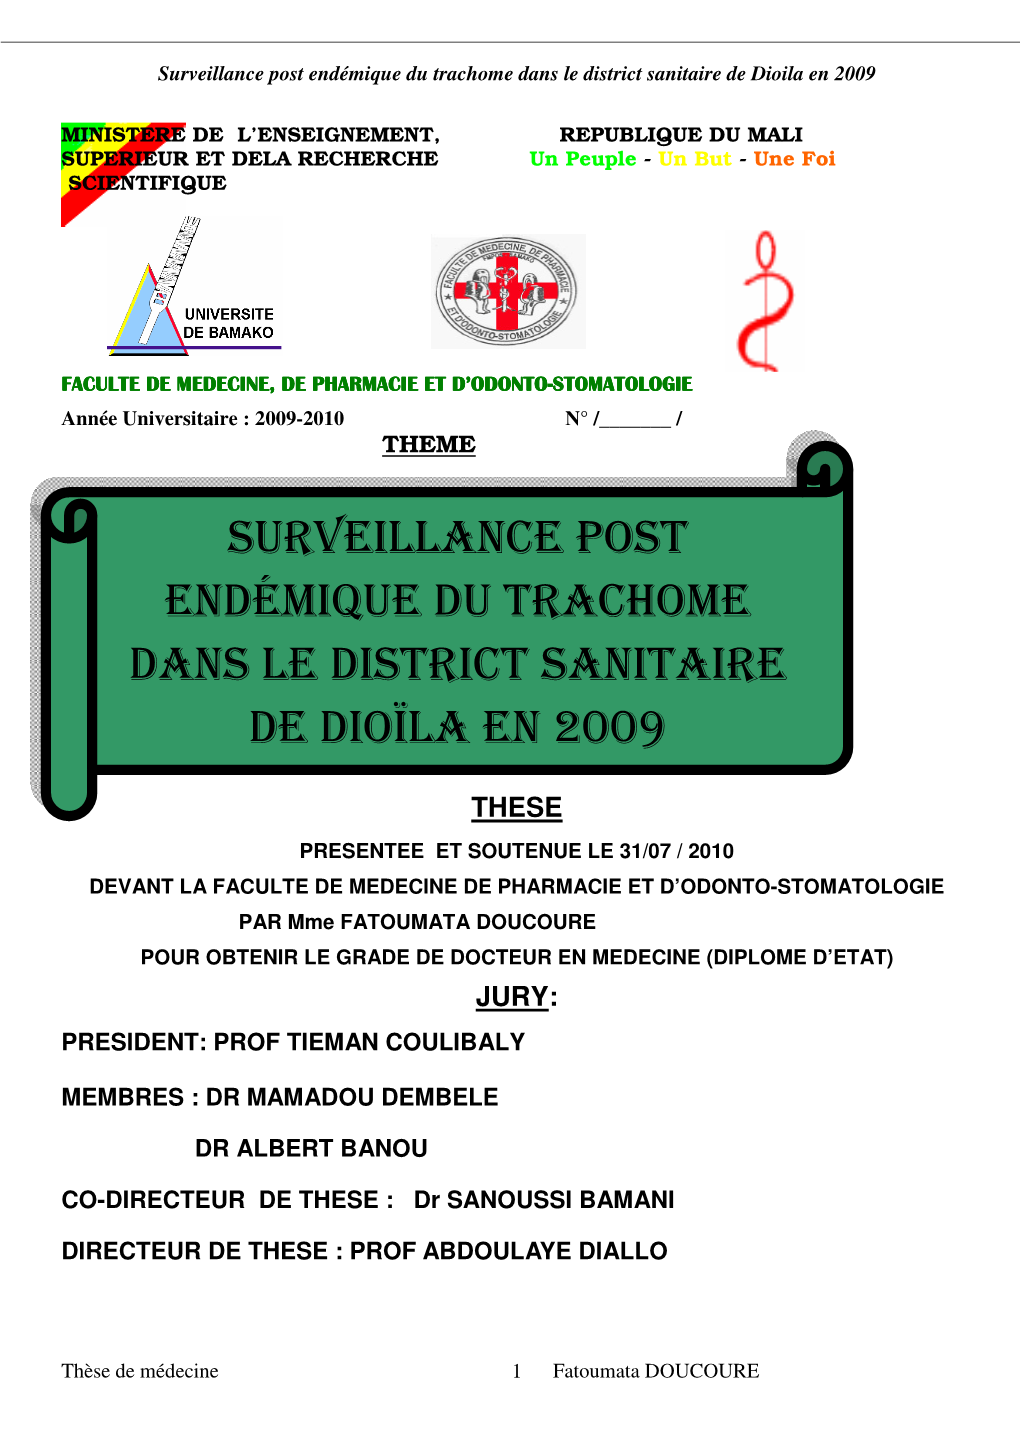 Surveillance Post Endémique Du Trachome Dans Le District Sanitaire De Dioila En 2009